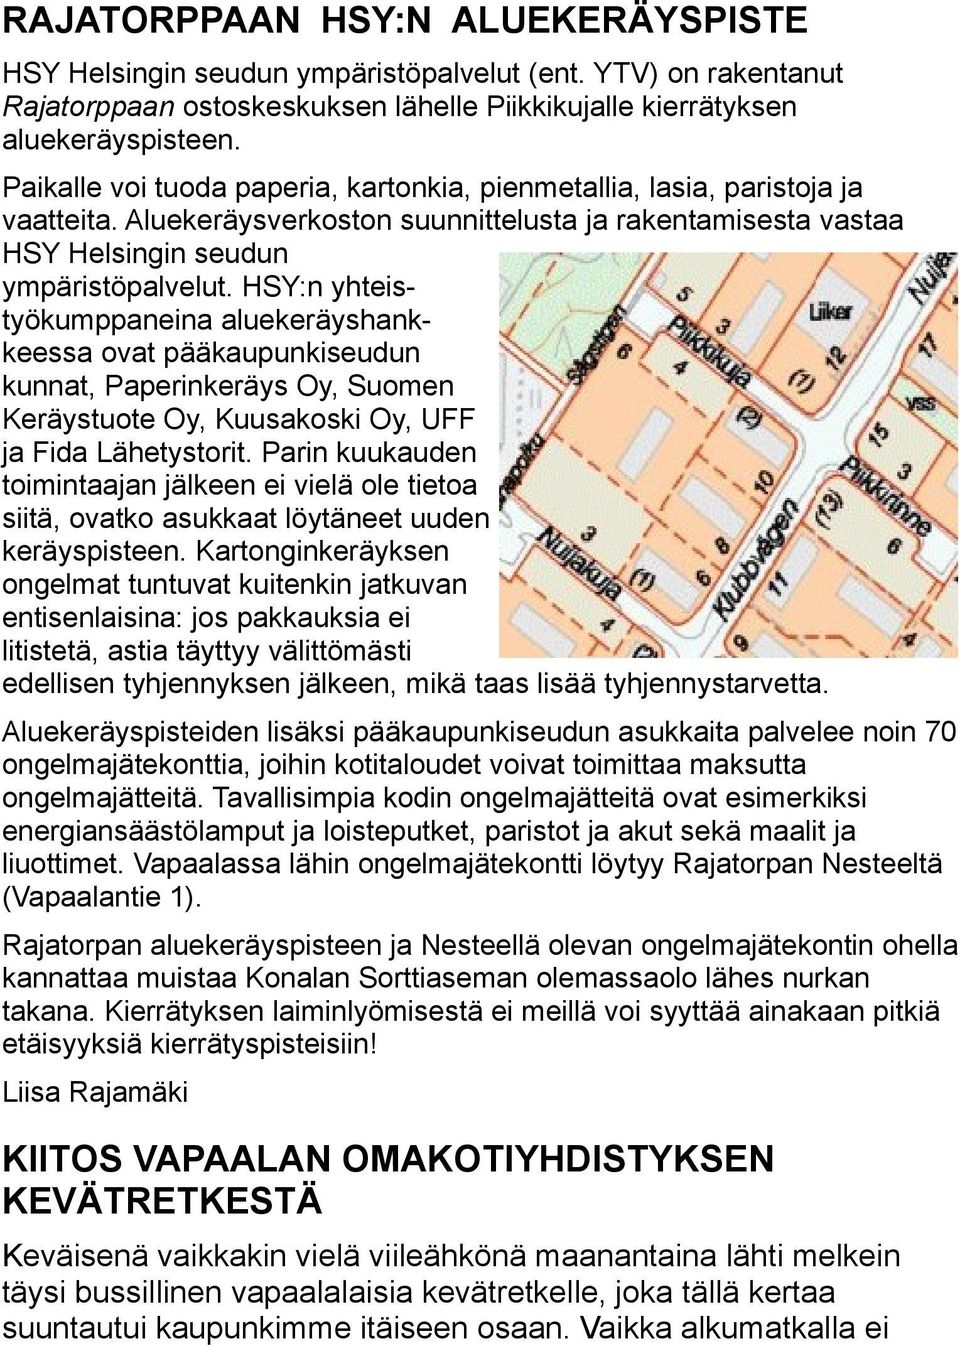 HSY:n yhteistyökumppaneina aluekeräyshankkeessa ovat pääkaupunkiseudun kunnat, Paperinkeräys Oy, Suomen Keräystuote Oy, Kuusakoski Oy, UFF ja Fida Lähetystorit.